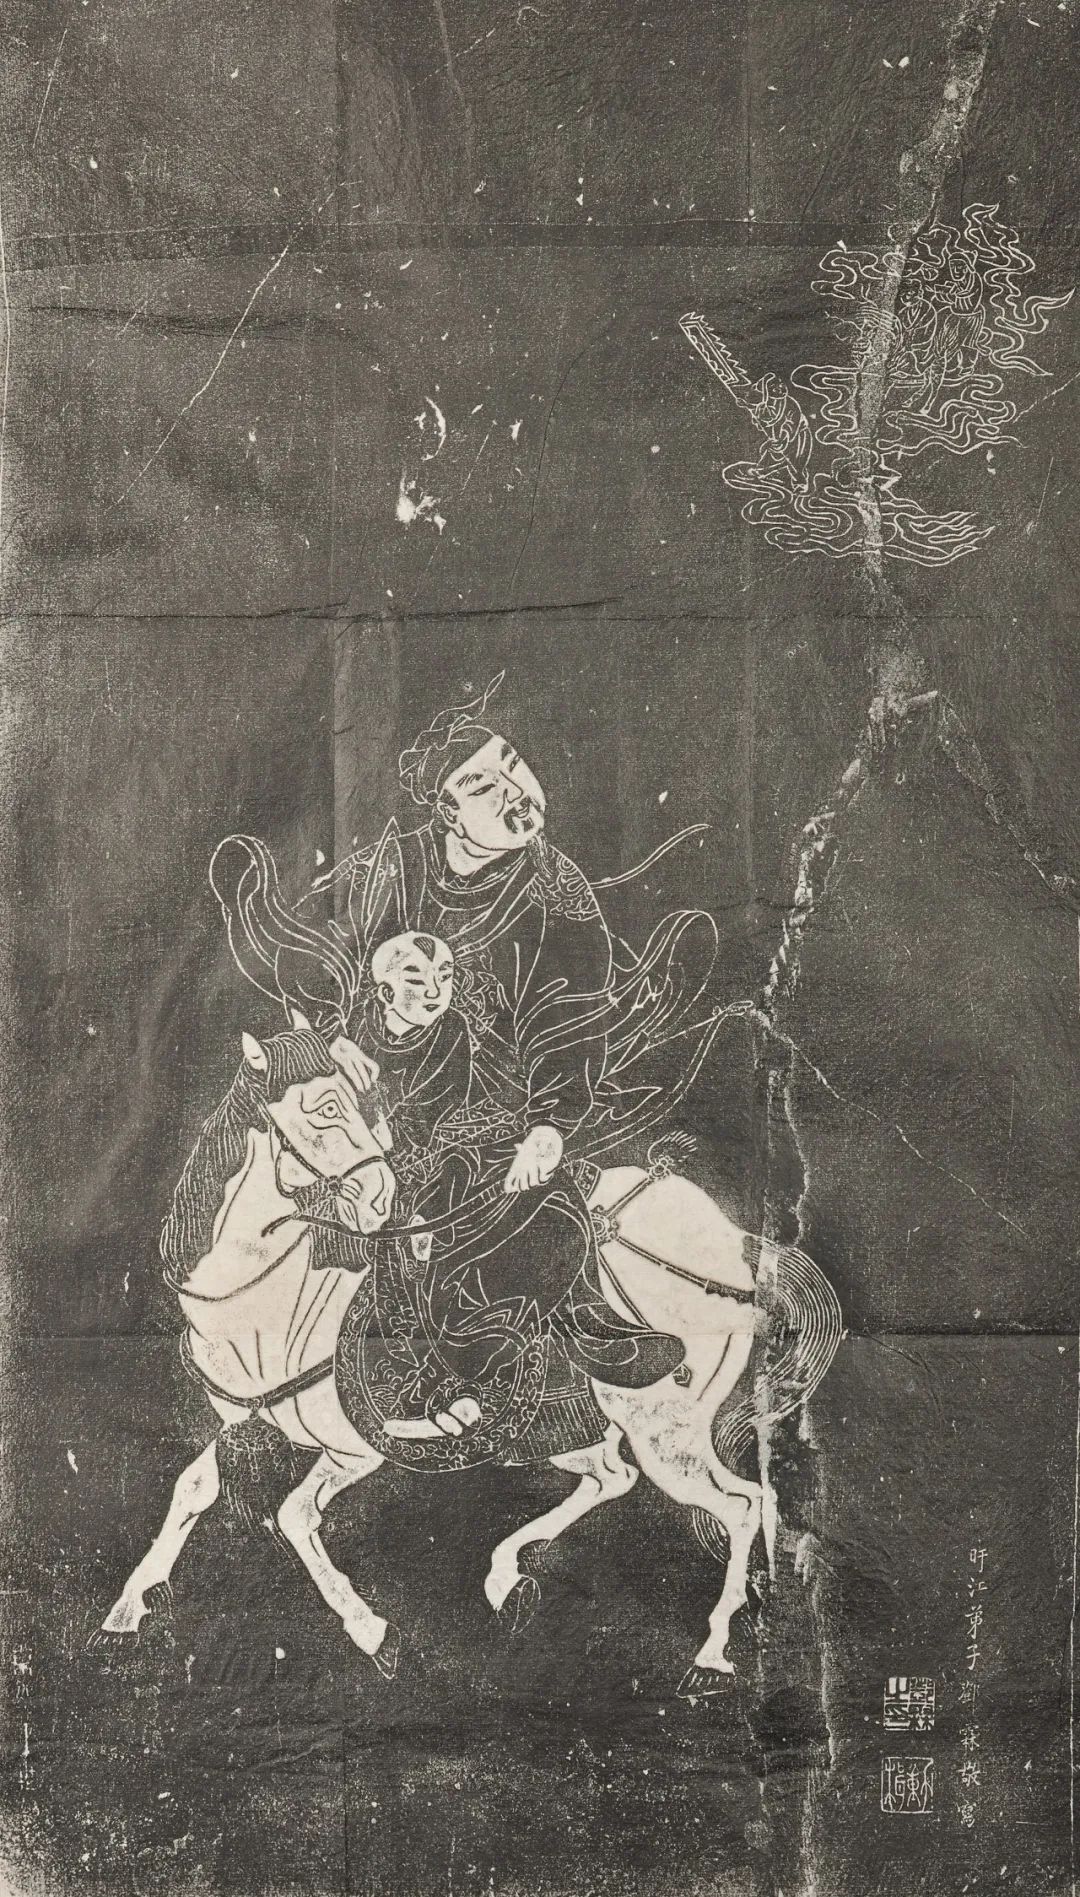 “刻图化民”，看陕地明清石刻线画中的信仰世界